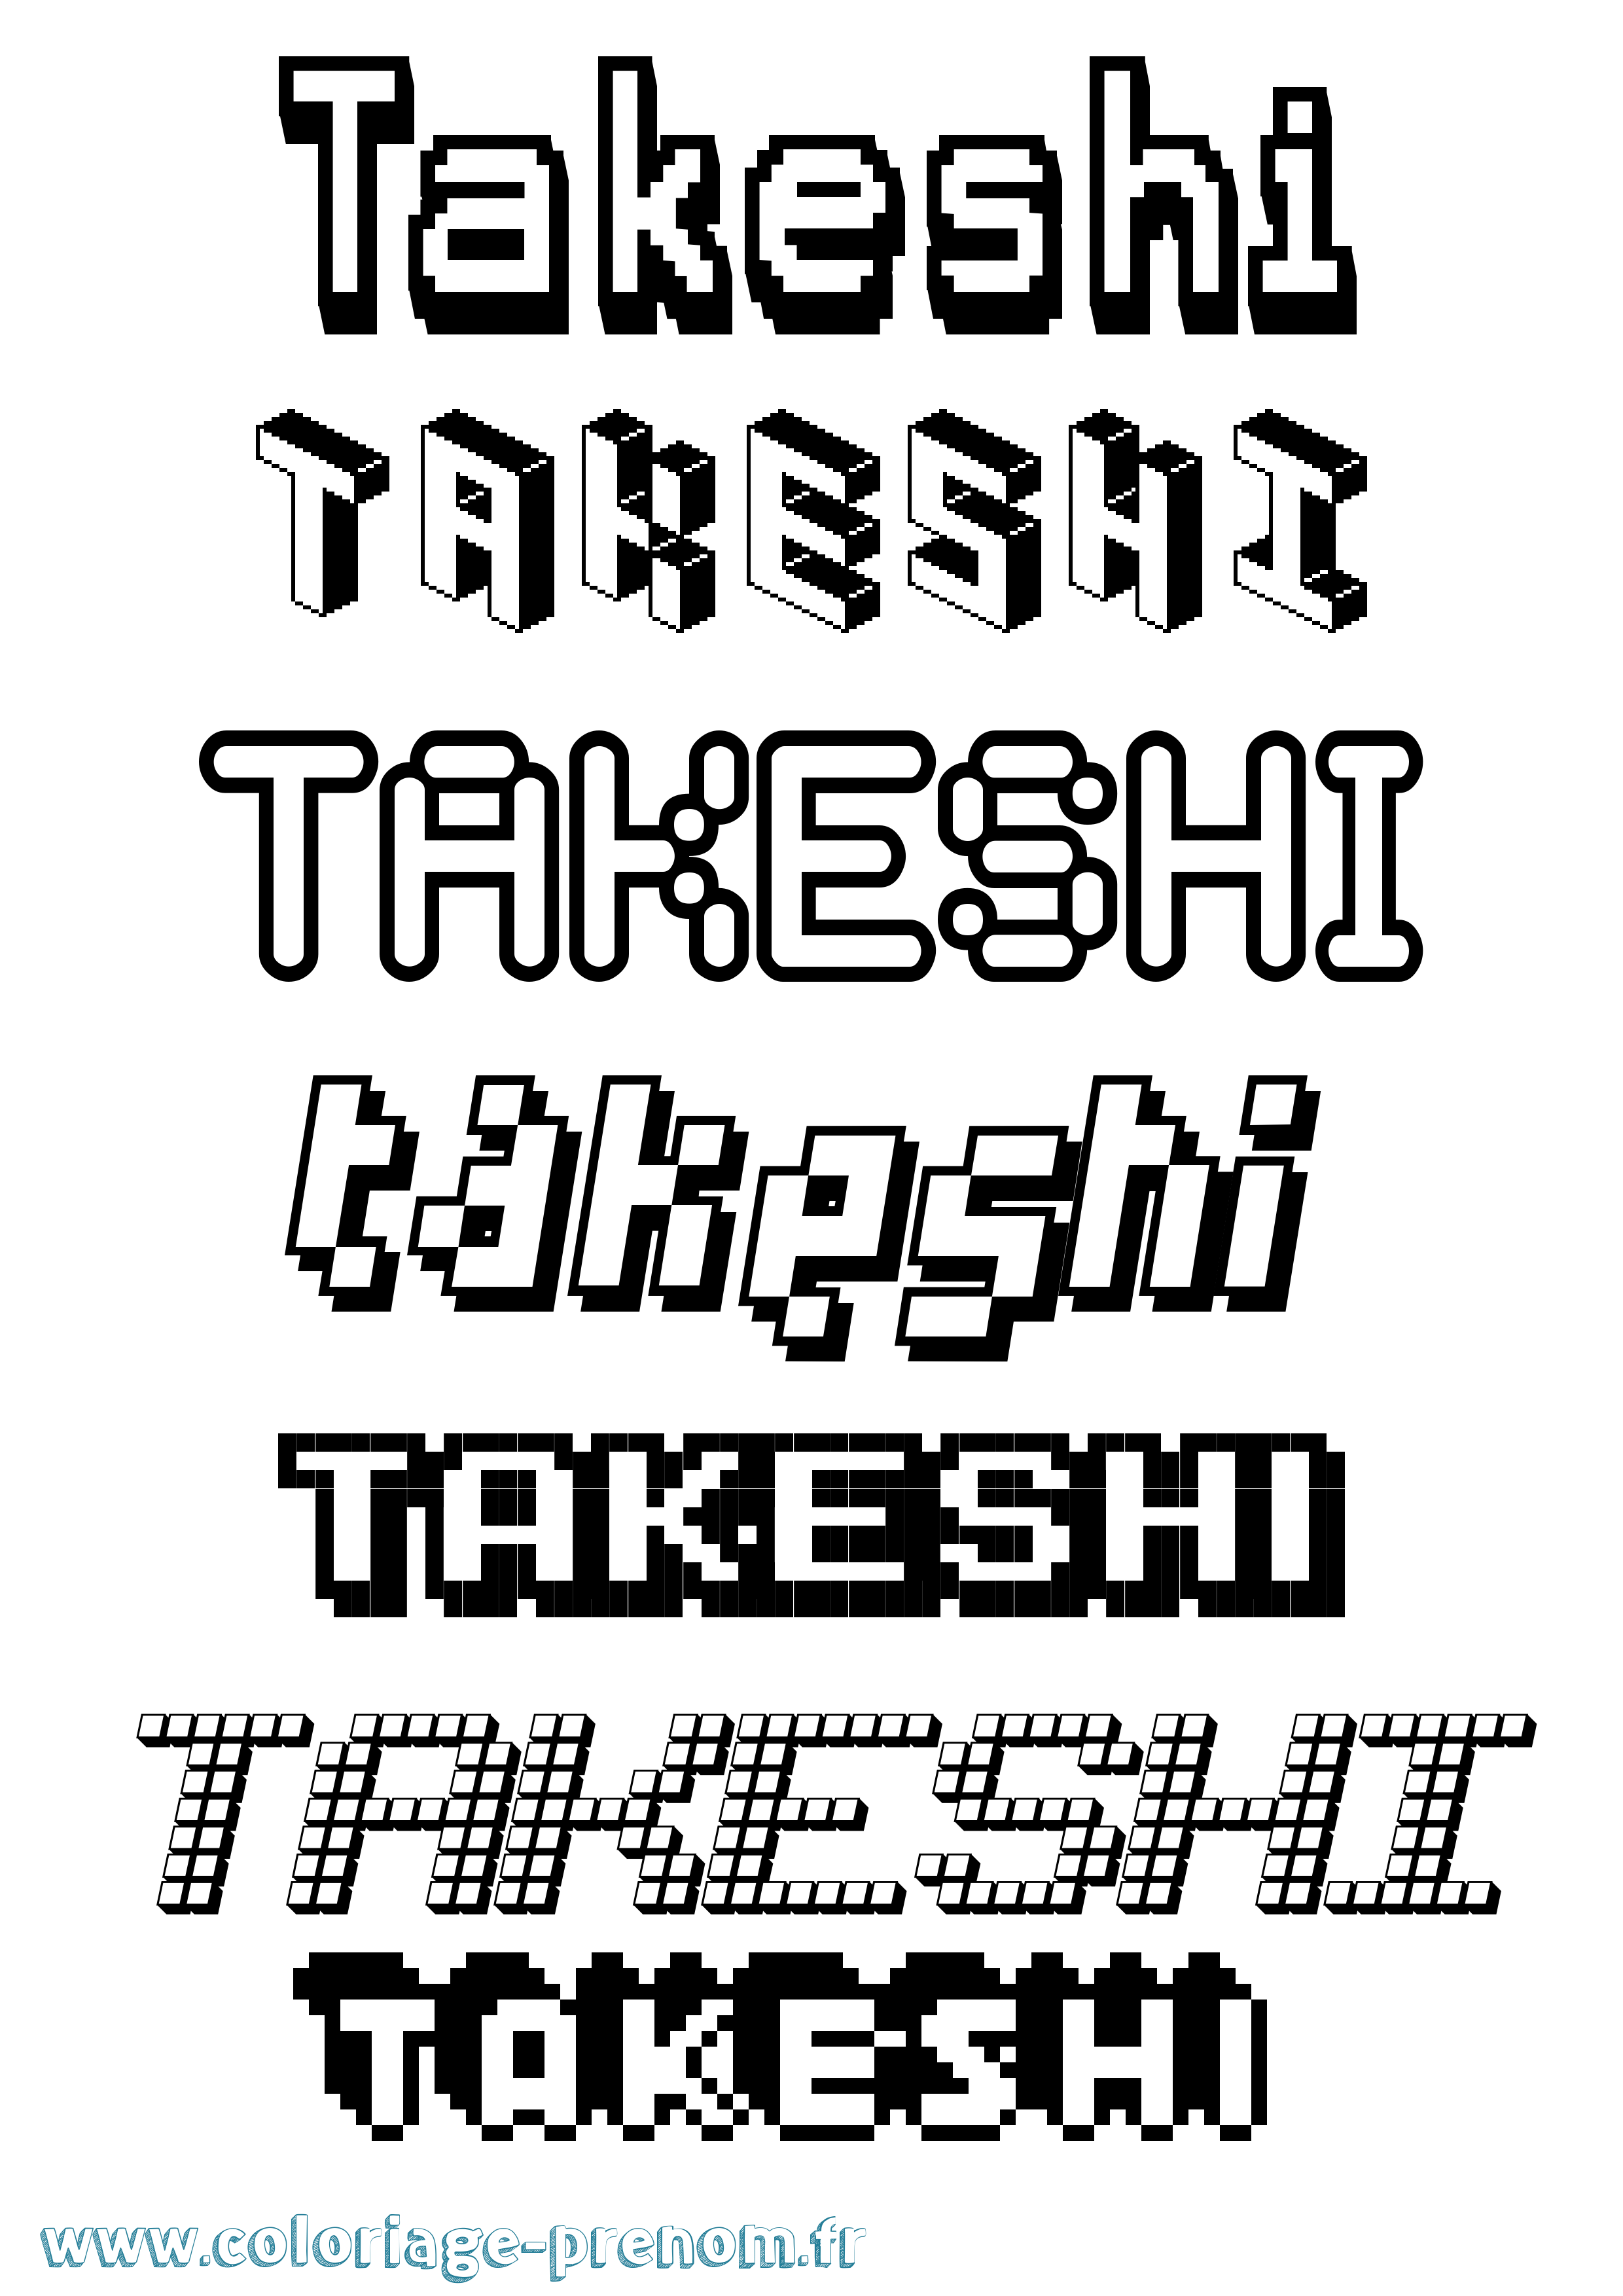 Coloriage prénom Takeshi Pixel